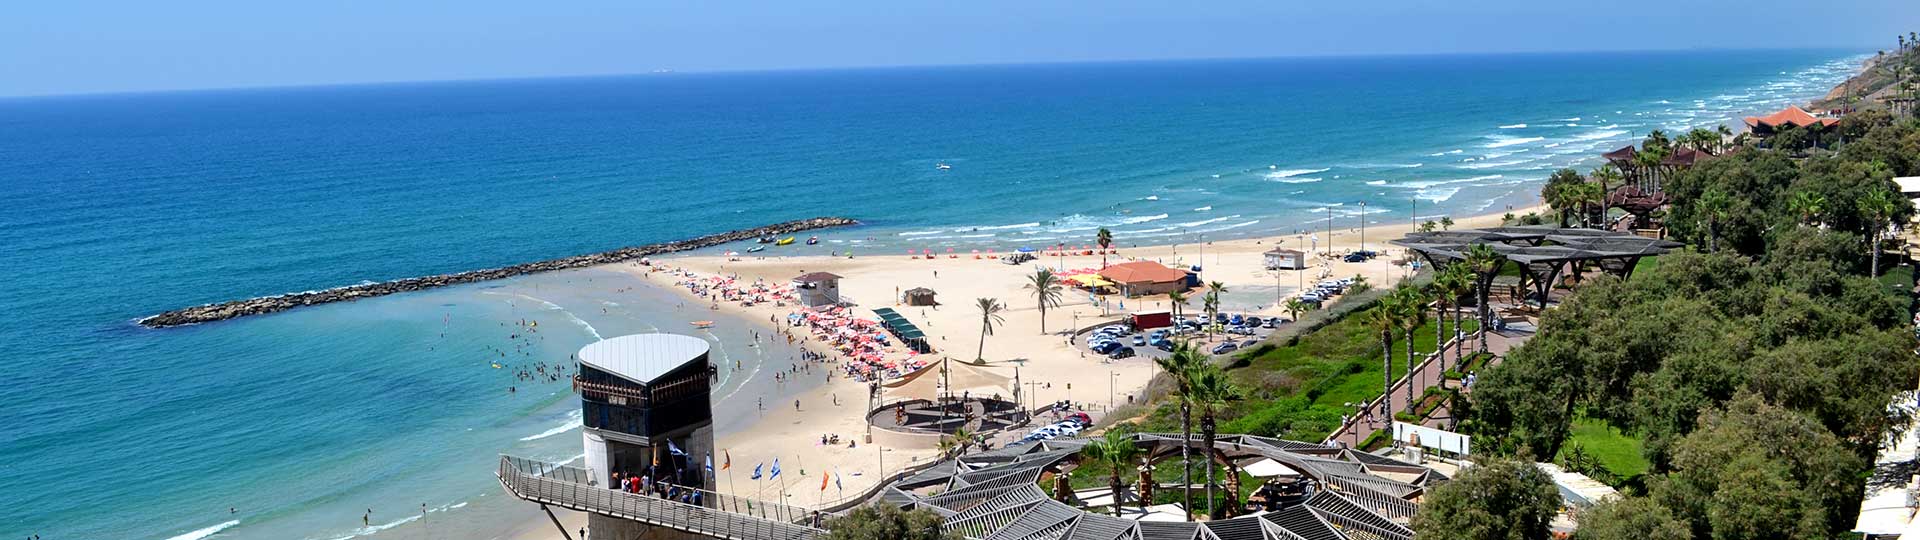 Netanya beach